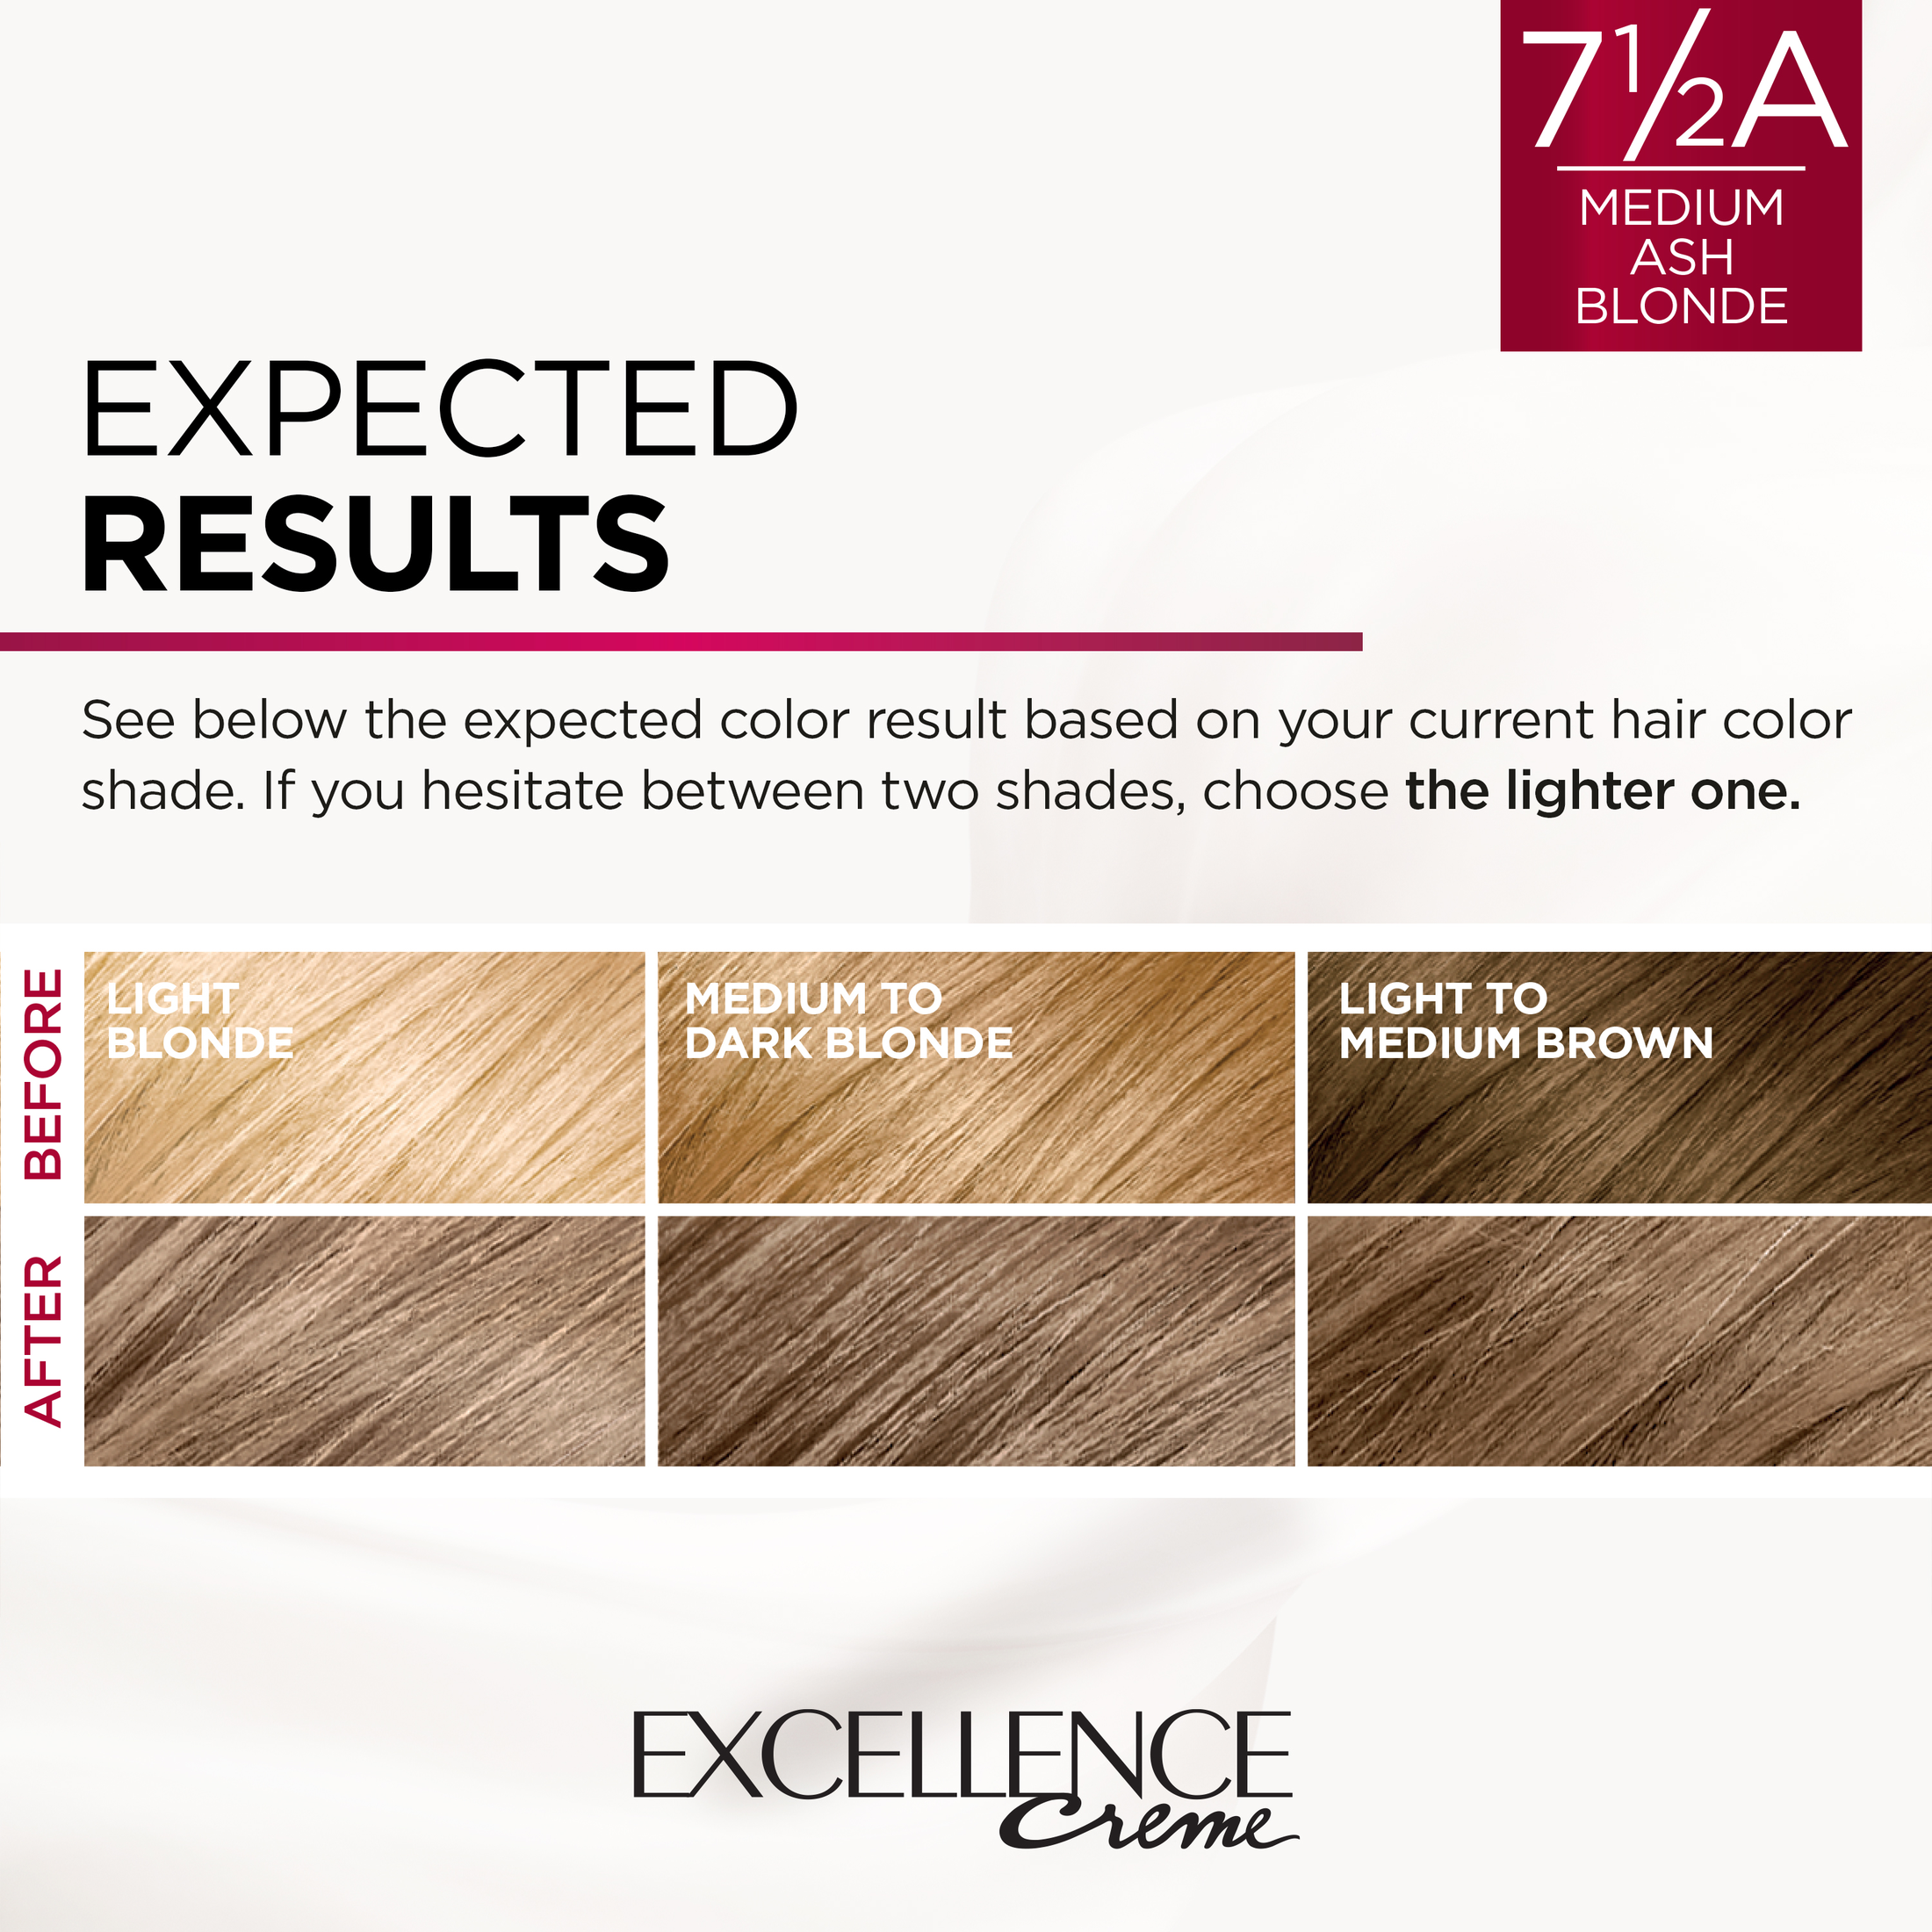 L'Oreal Paris Excellence Creme Permanent Hair Color, 7.5A Medium Ash Blonde - image 5 of 8